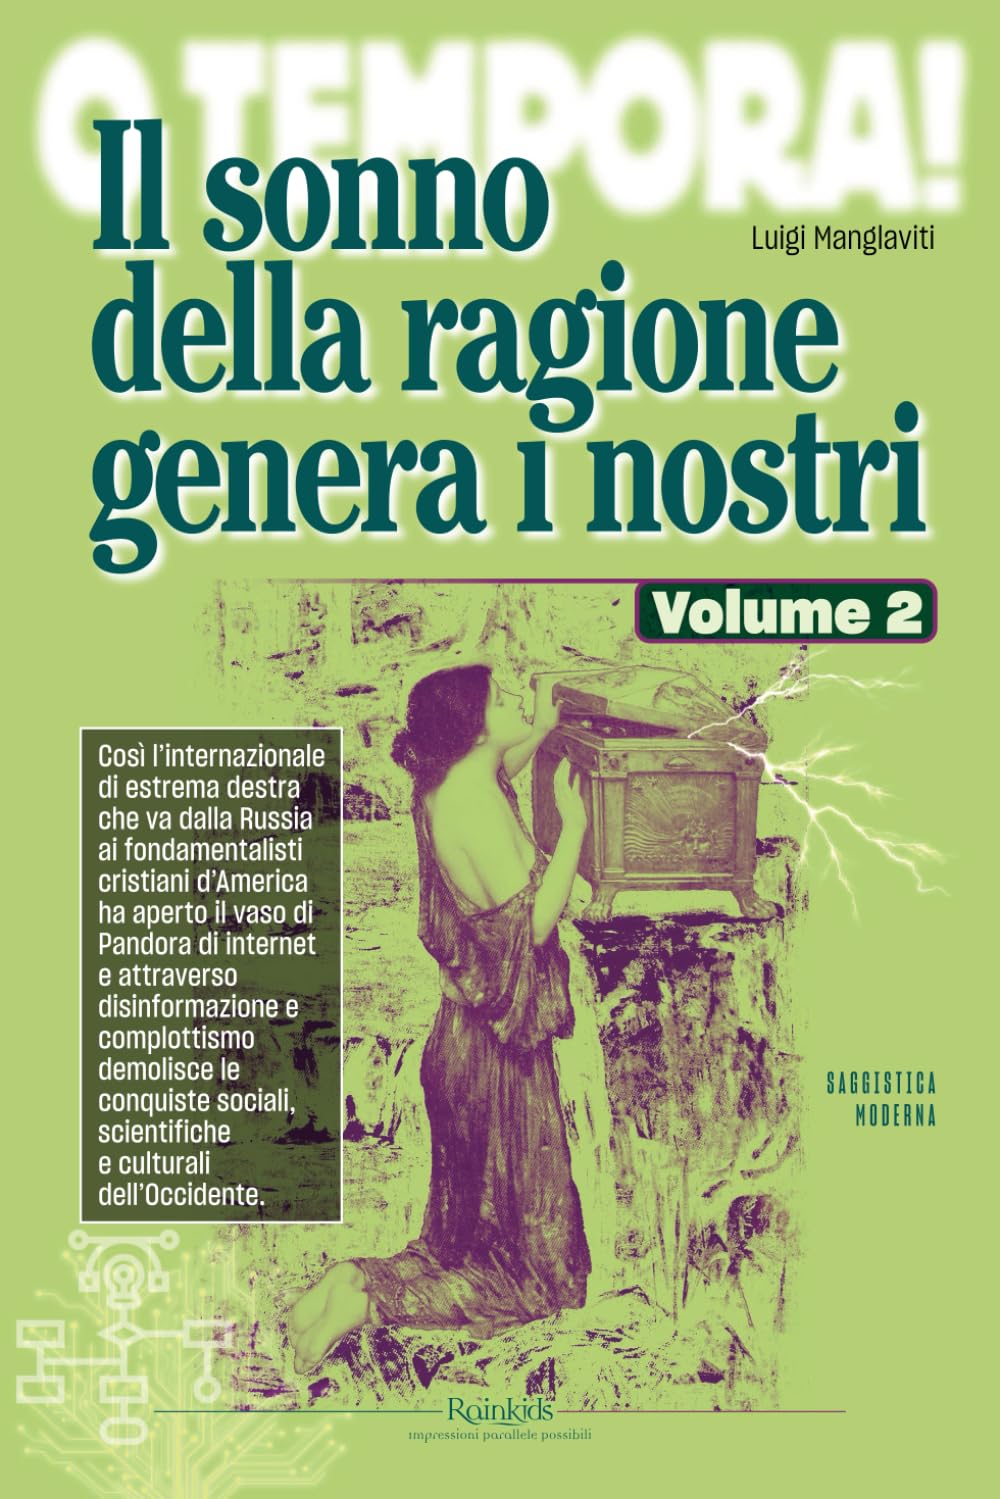 Luigi Manglaviti: Il sonno della ragione genera i nostri - Volume 2 (Italiano language, Rainkids)